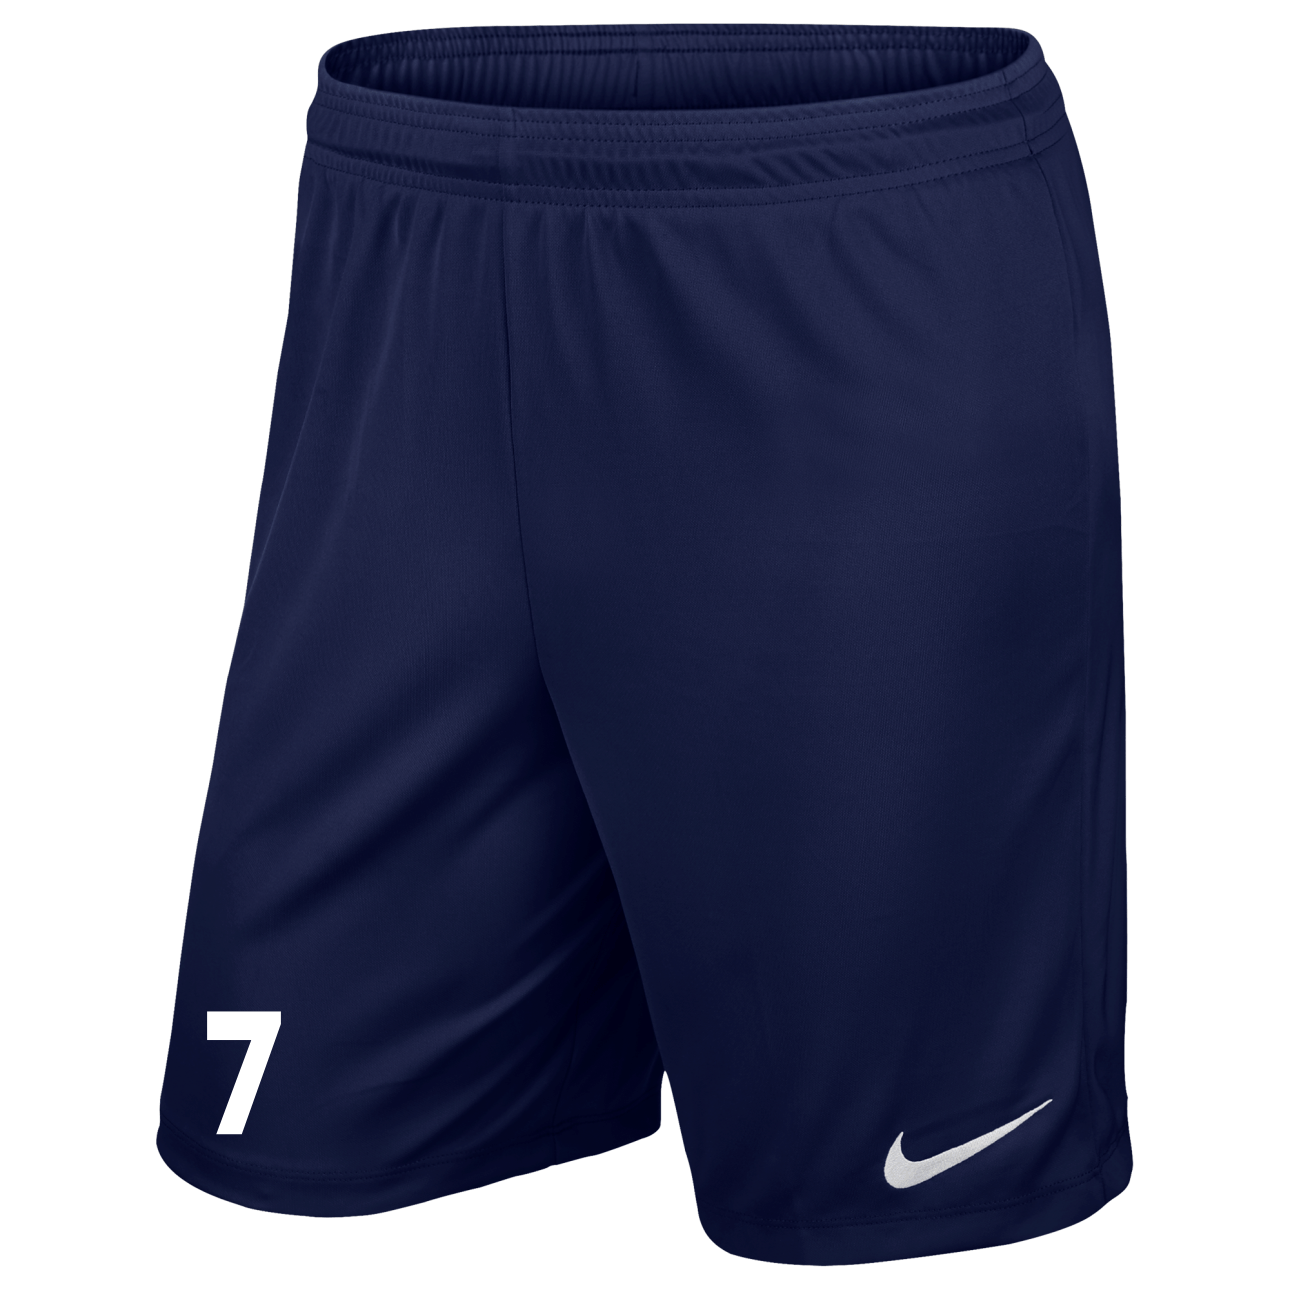 Burton Joyce FC - Nike Navy Shorts